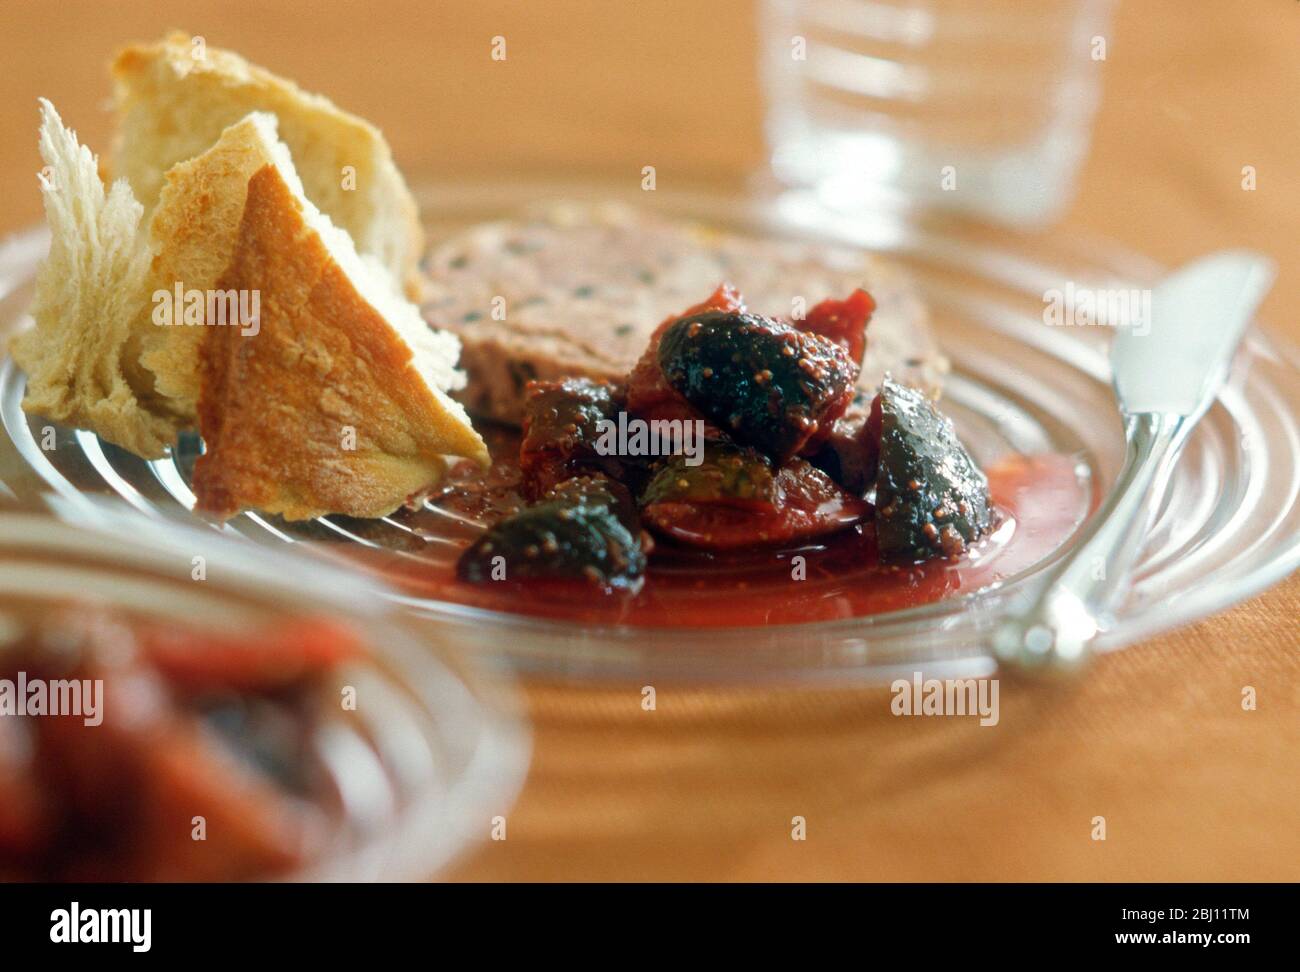 Entrée ou repas léger de la figue conserver avec une tranche de terrine et de pain croustillant - Banque D'Images